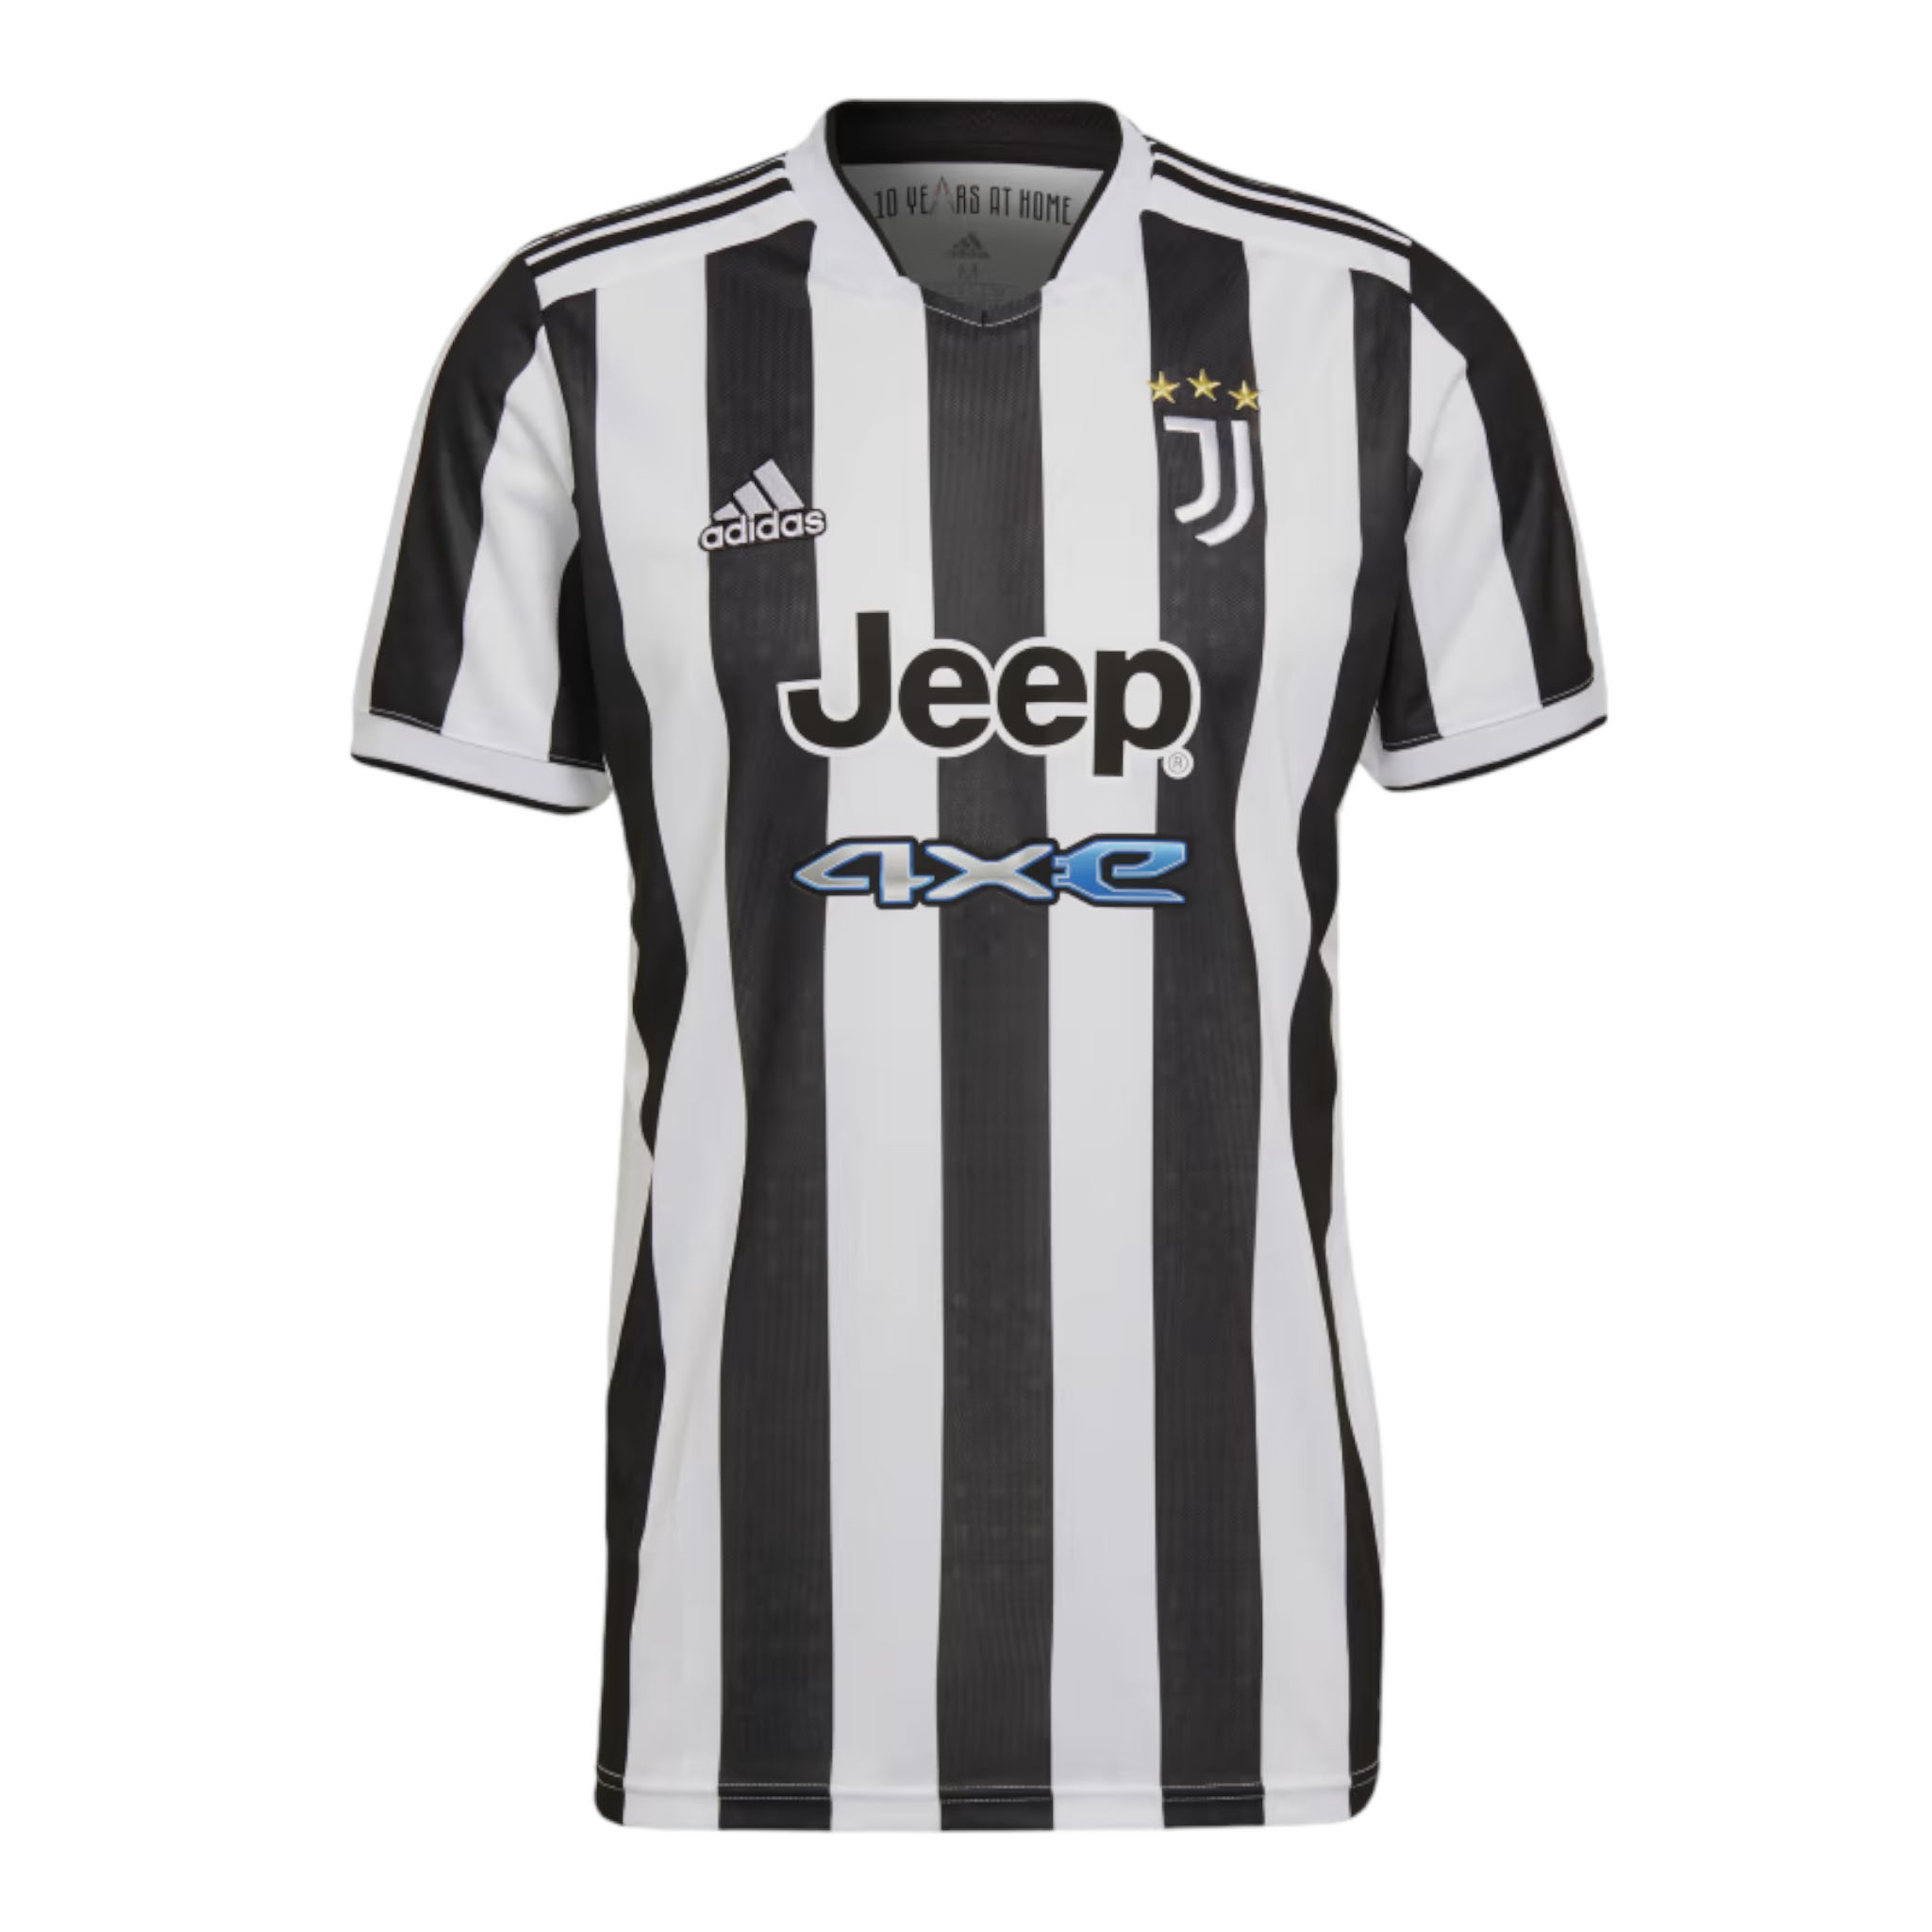 Футболка Adidas Juventus 21/22 Home, белый/черный